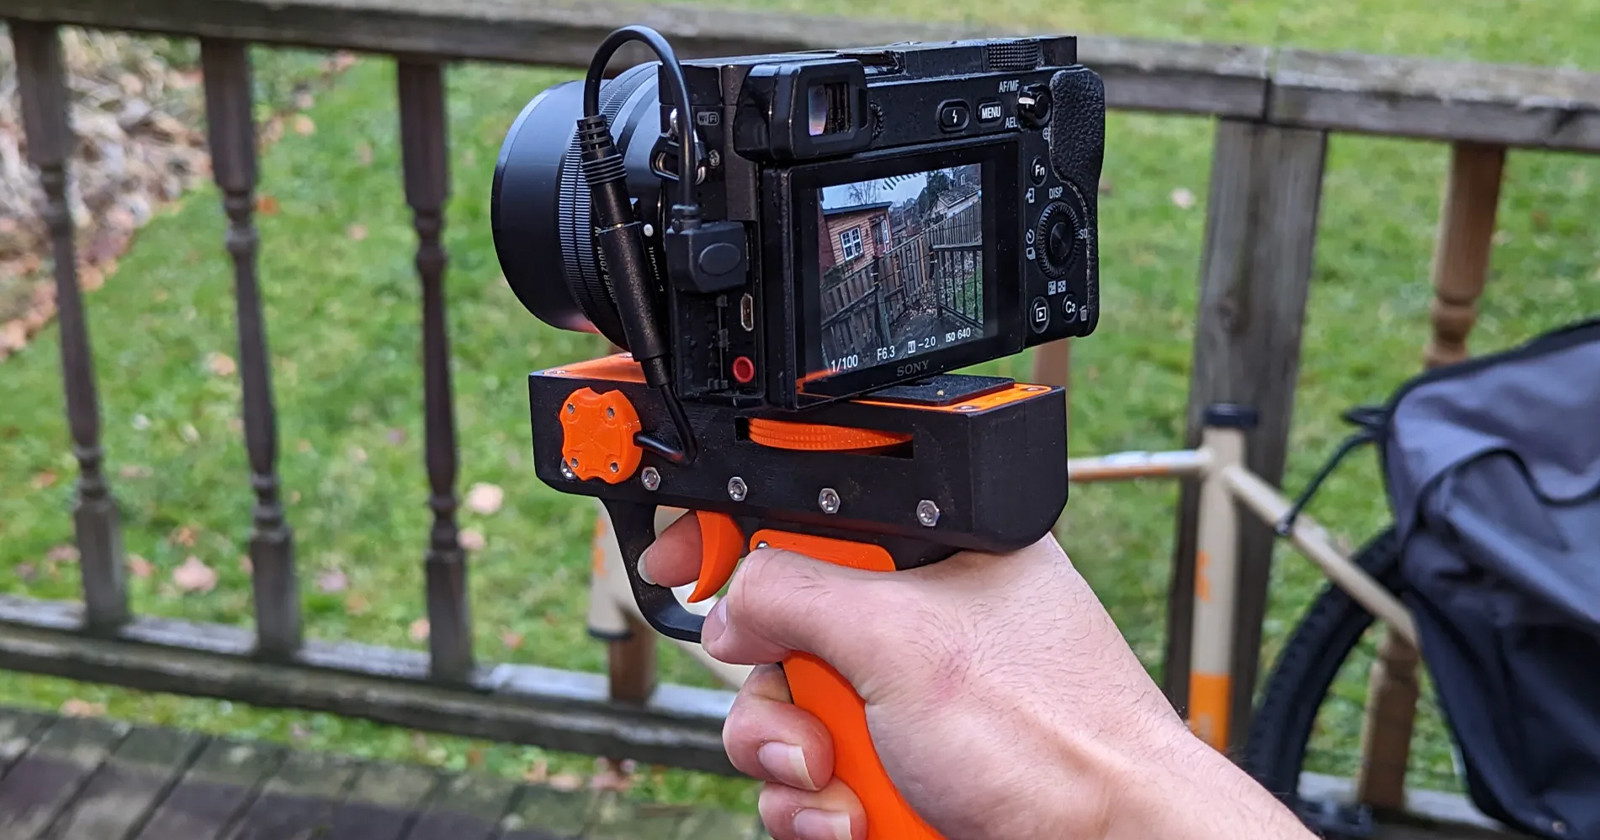  printed camera pistol grip inspired soviet spy equipment 